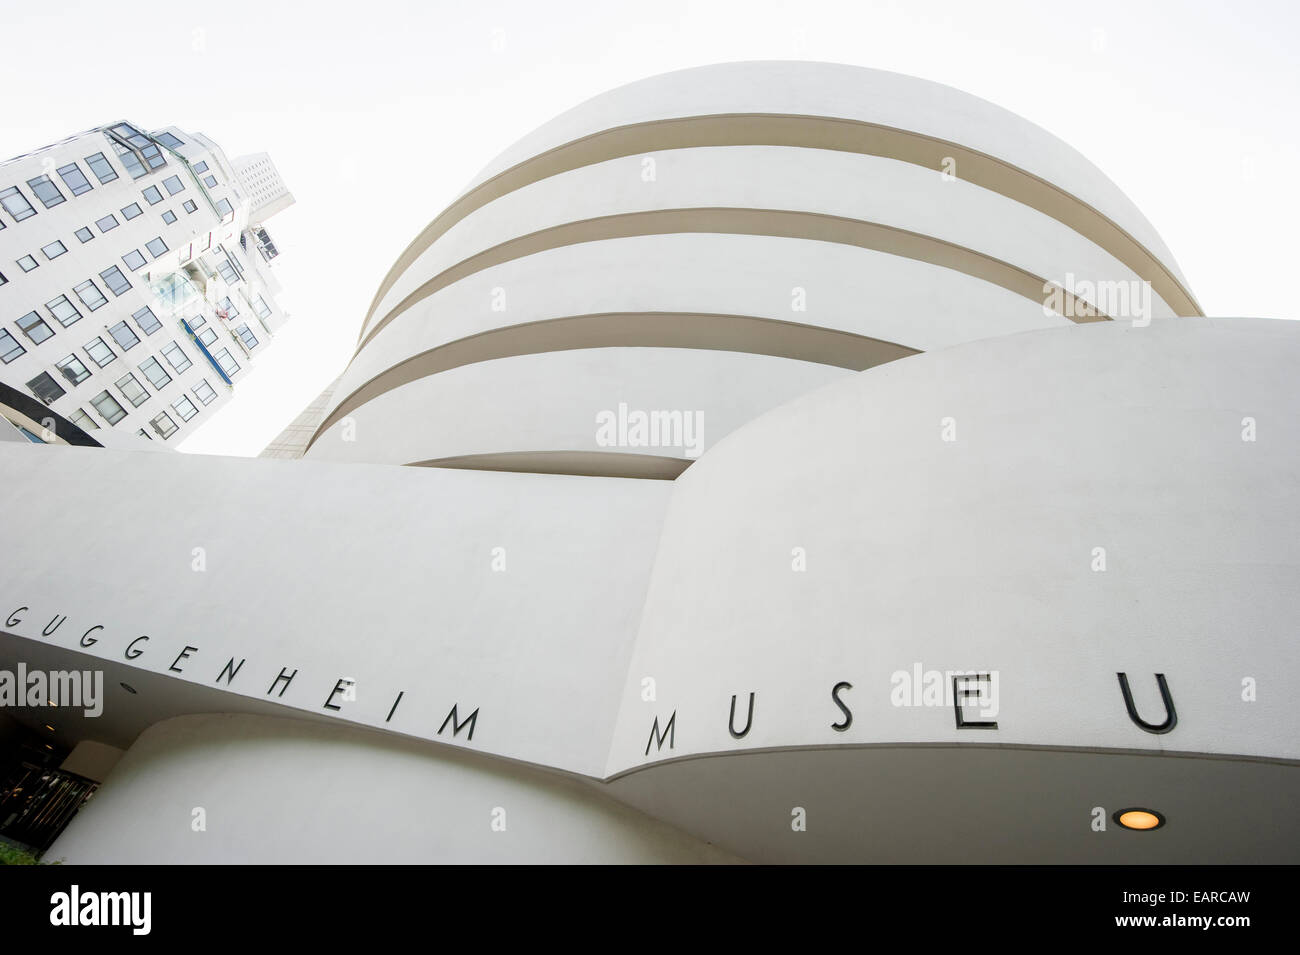 Guggenheim Museum, Manhattan, New York City, New York, United States Stock Photo